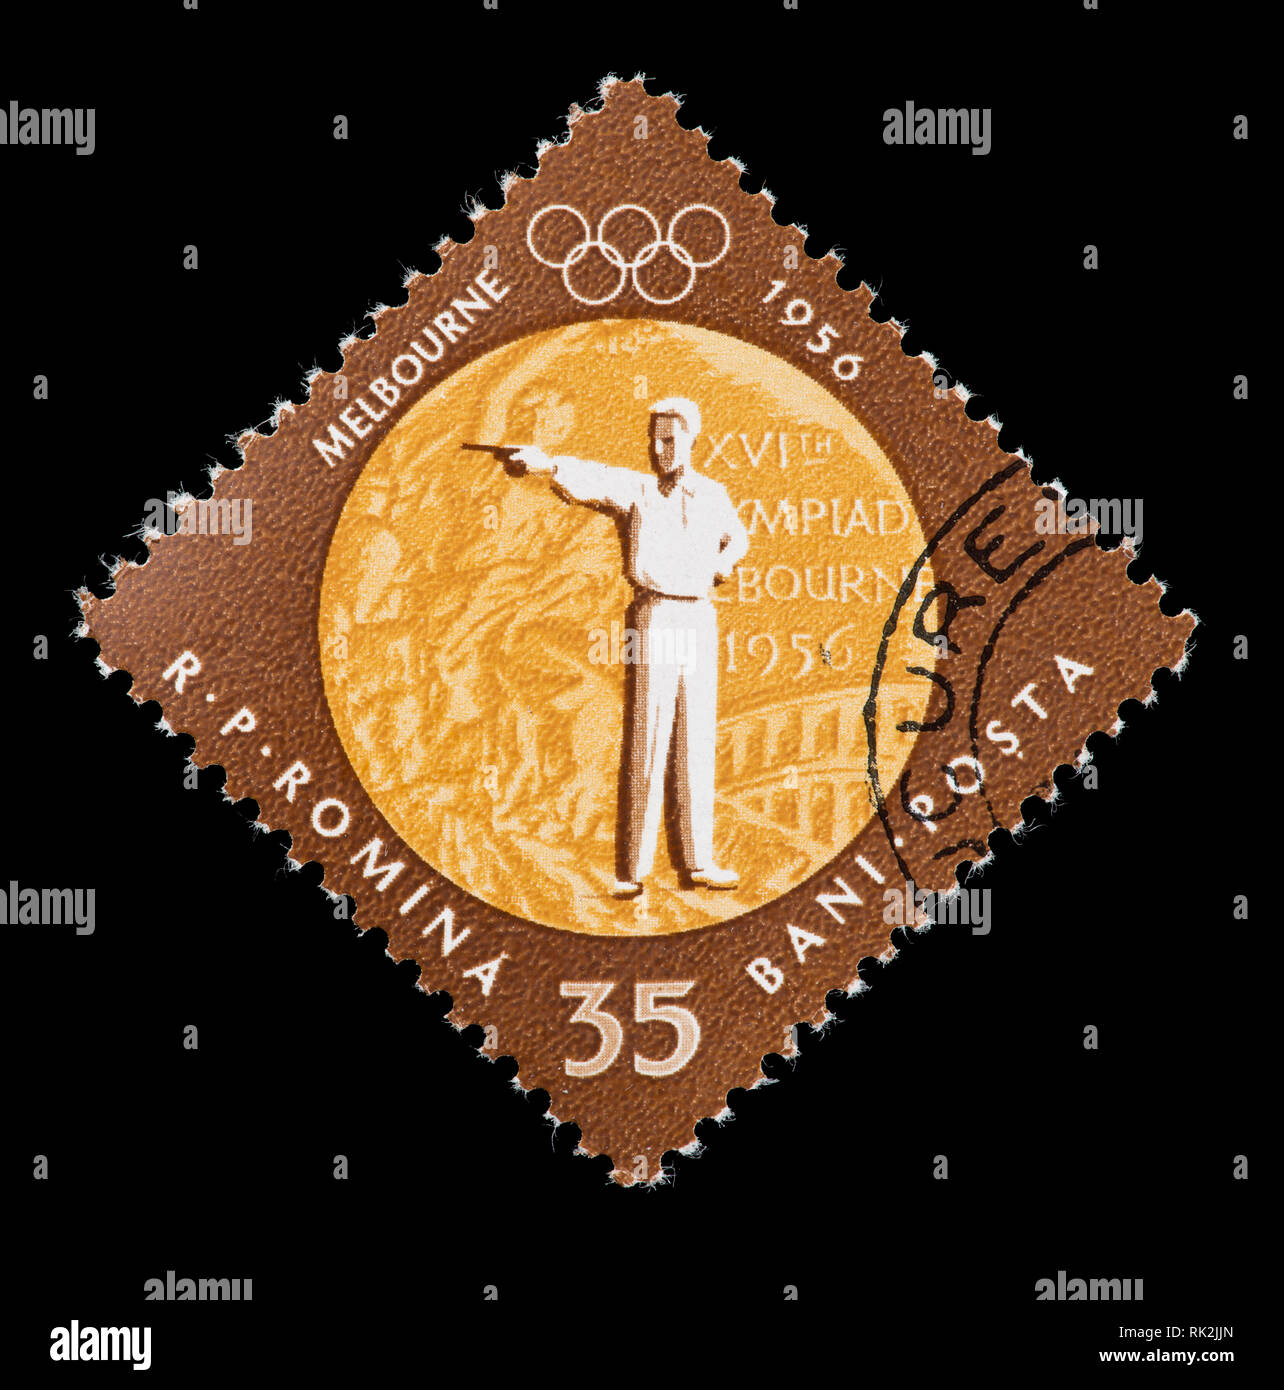 Briefmarke aus Rumänien, Pistolenschießen, für die Goldmedaille in dieser Veranstaltung in der 1956 Olympischen Spiele in Australien ausgestellt. Stockfoto